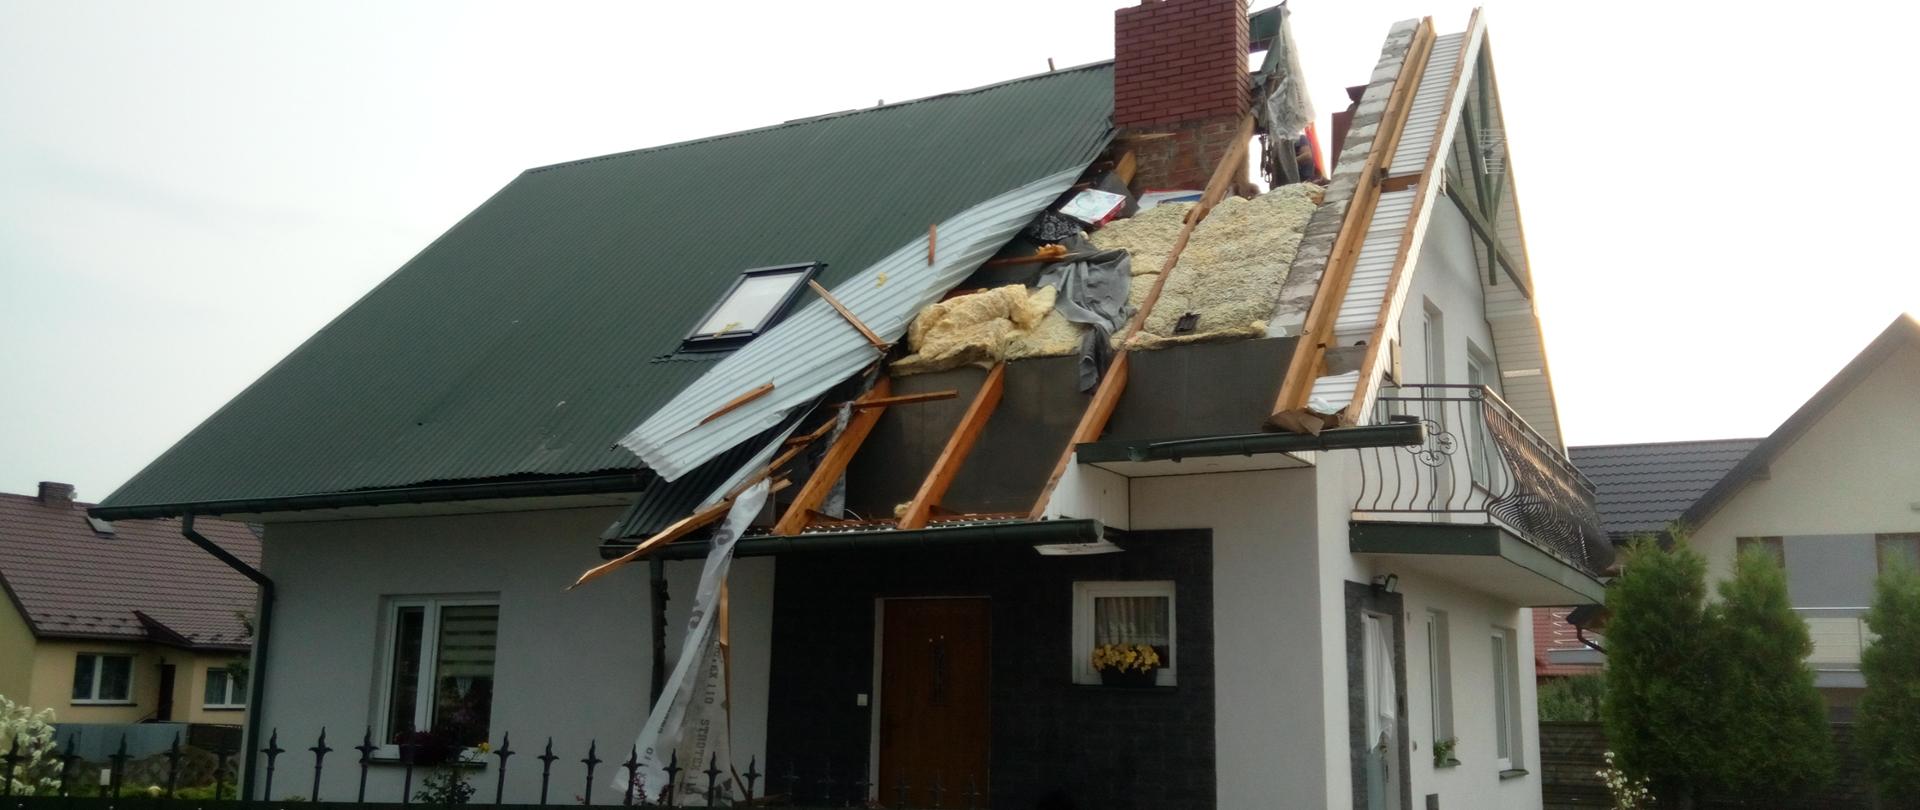 Dom jednorodzinny uszkodzony w wyniku silnego wiatru. Zerwana została znaczna część pokrycia dachowego z blachy odsłaniająca konstrukcję dachową wraz z warstwami izolacyjnymi.